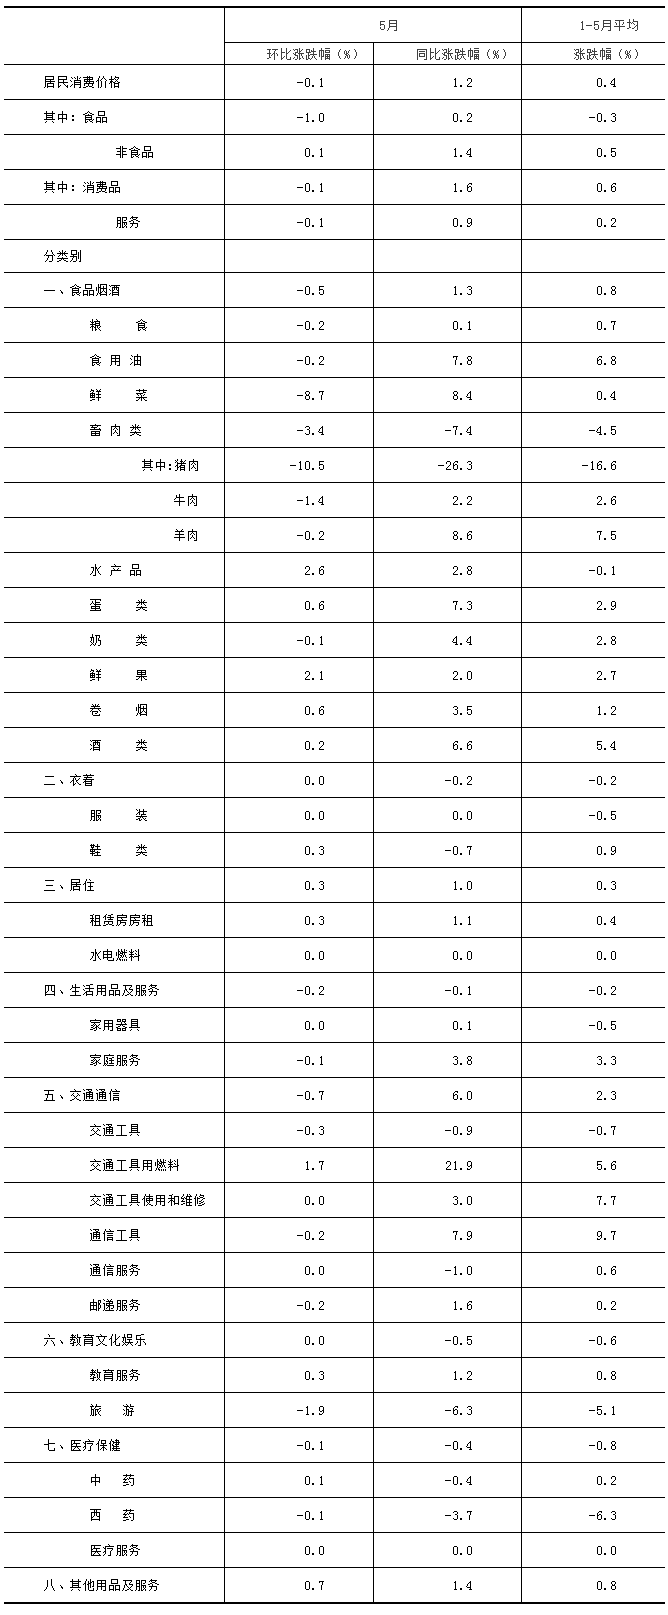 2021年5月份北京居民消費價格主要數據